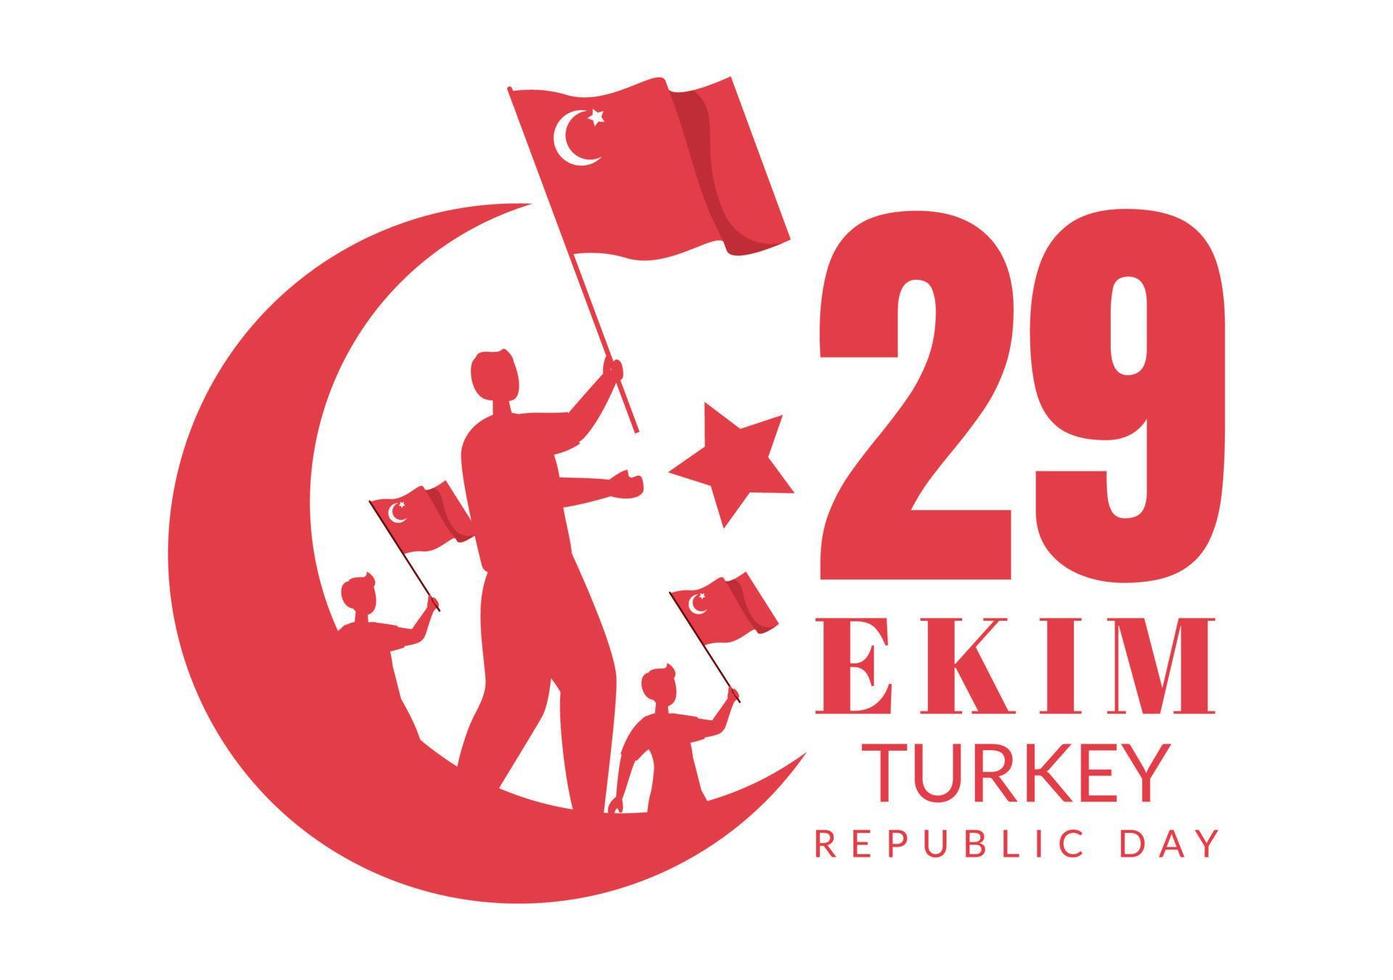 tag der republik türkei oder 29 ekim cumhuriyet bayrami kutlu olsun handgezeichnete flache illustration der karikatur mit flagge des türkischen und fröhlichen feiertagsdesigns vektor